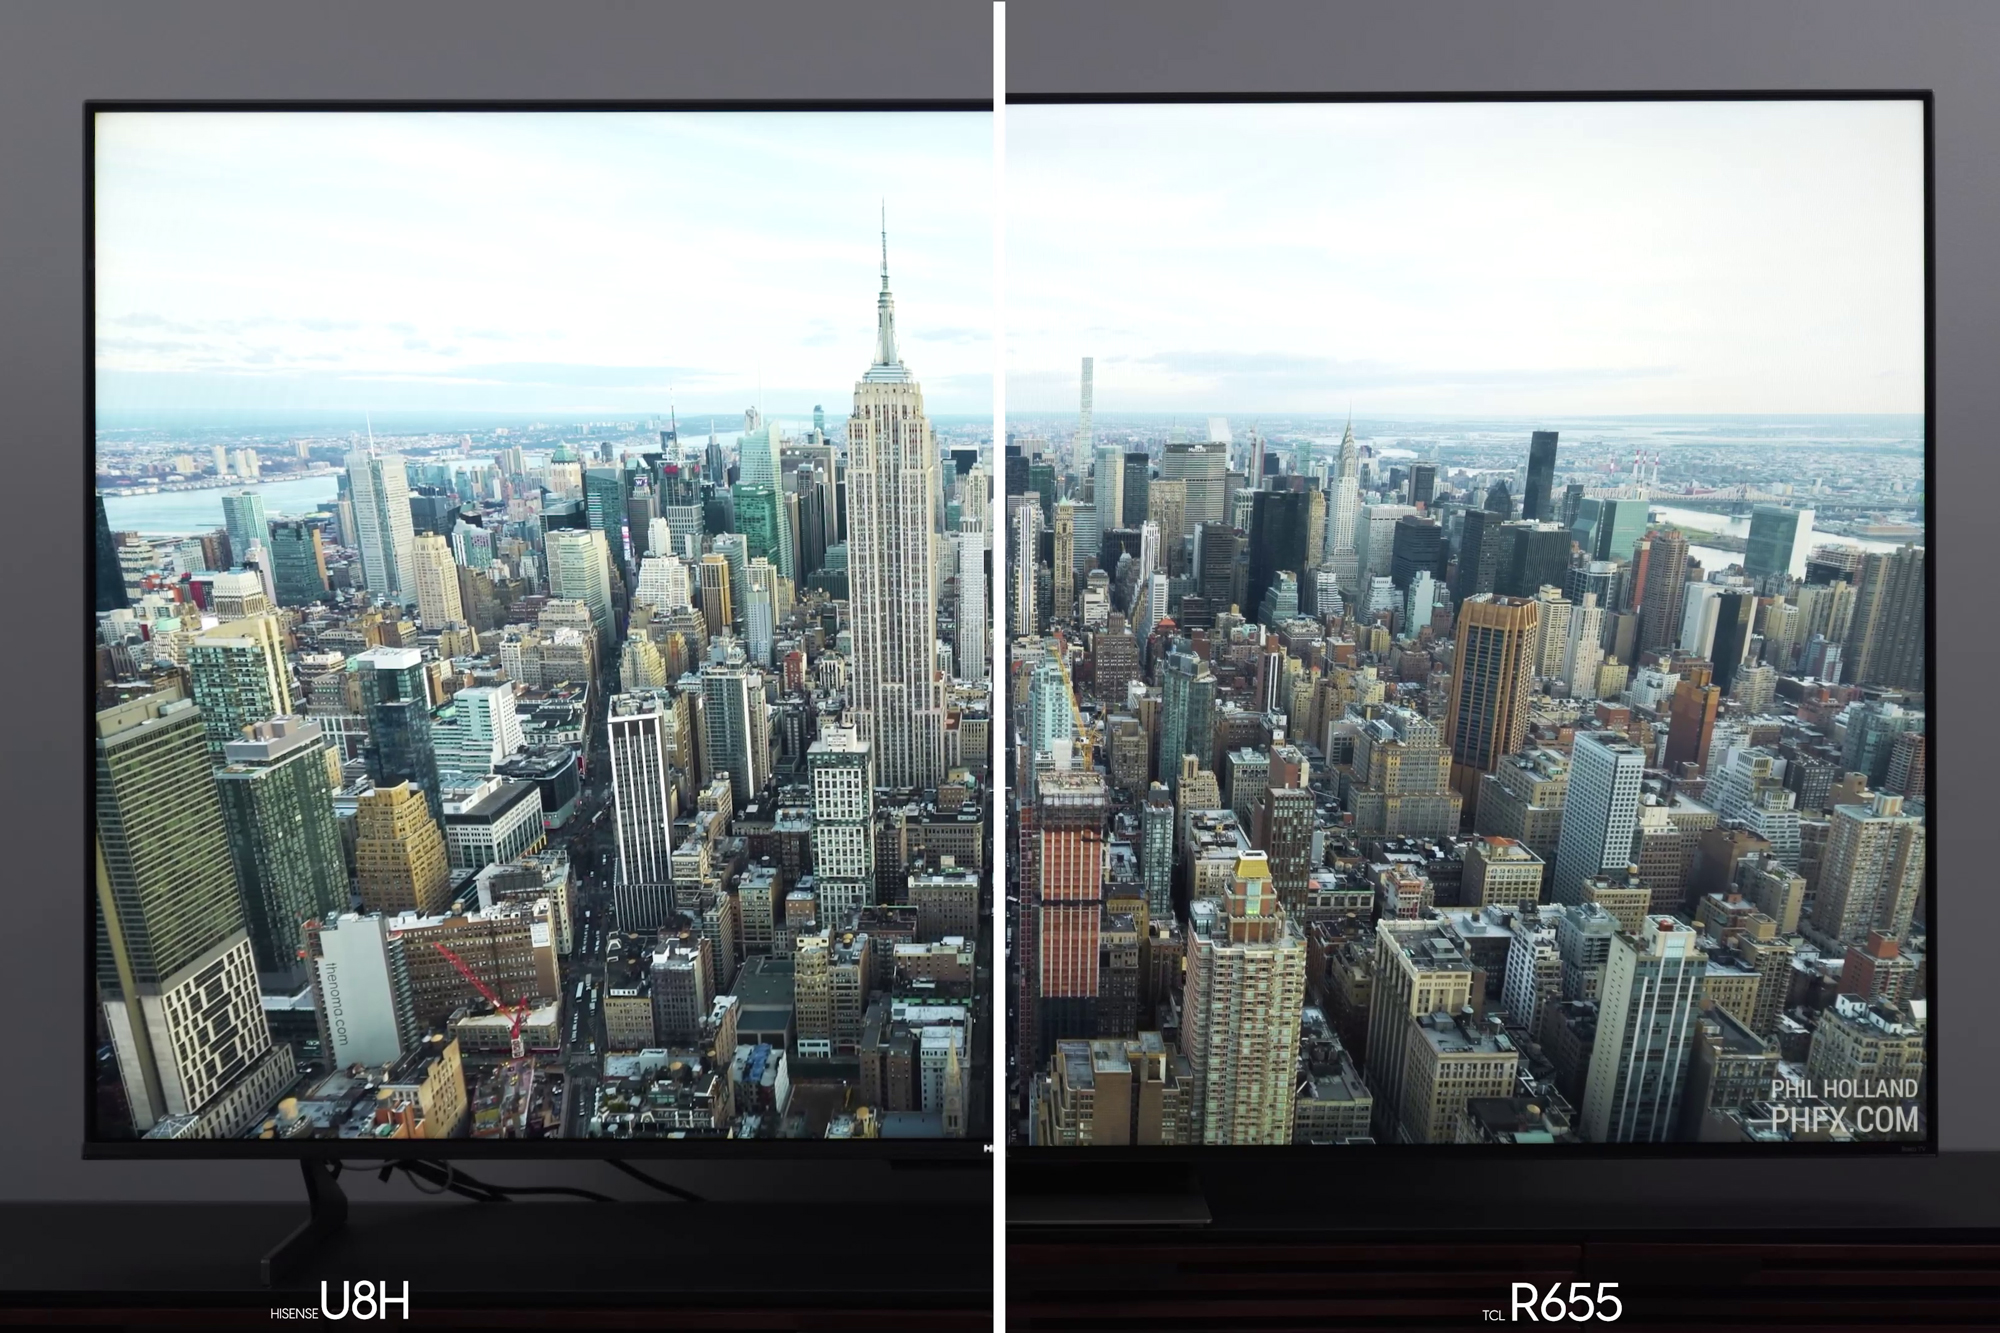 Comparação lado a lado de imagens do horizonte de uma cidade no Hisense U8H vs TCL 6-Series R655.